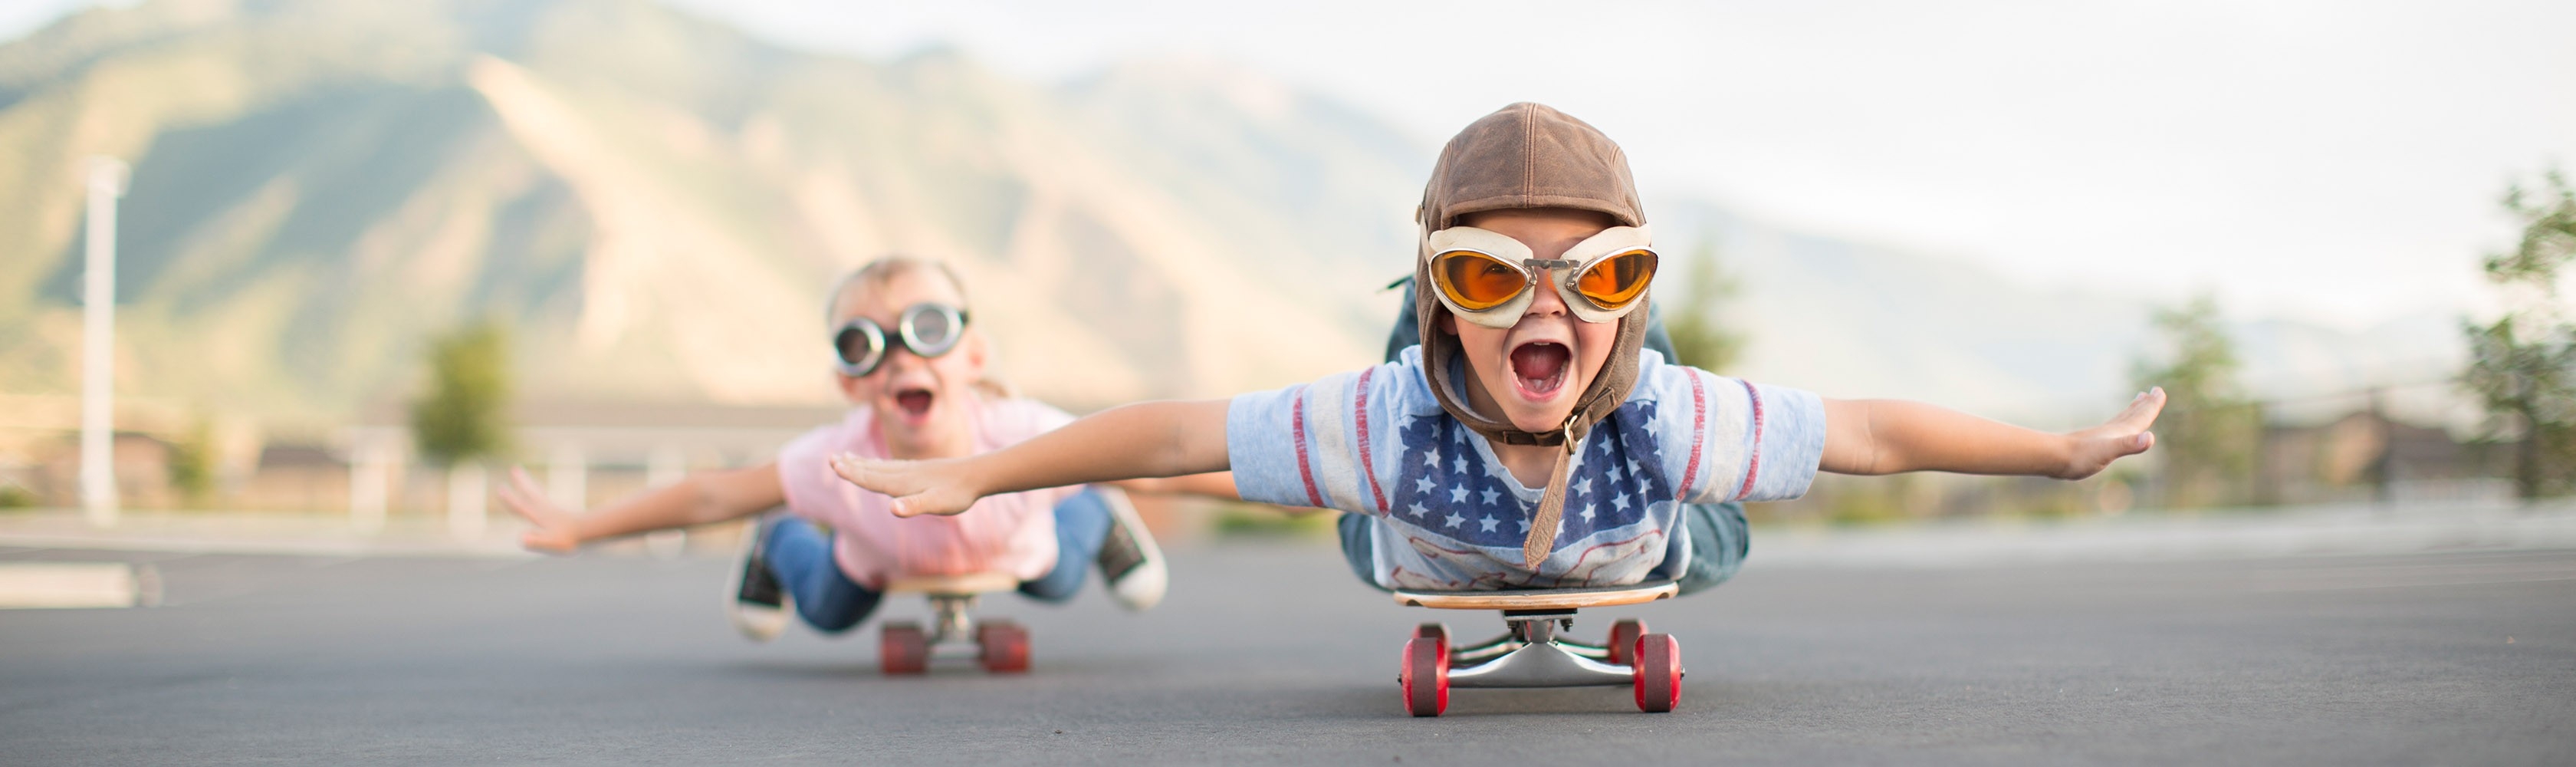 deux enfants se défoulent en skateboard dans la rue